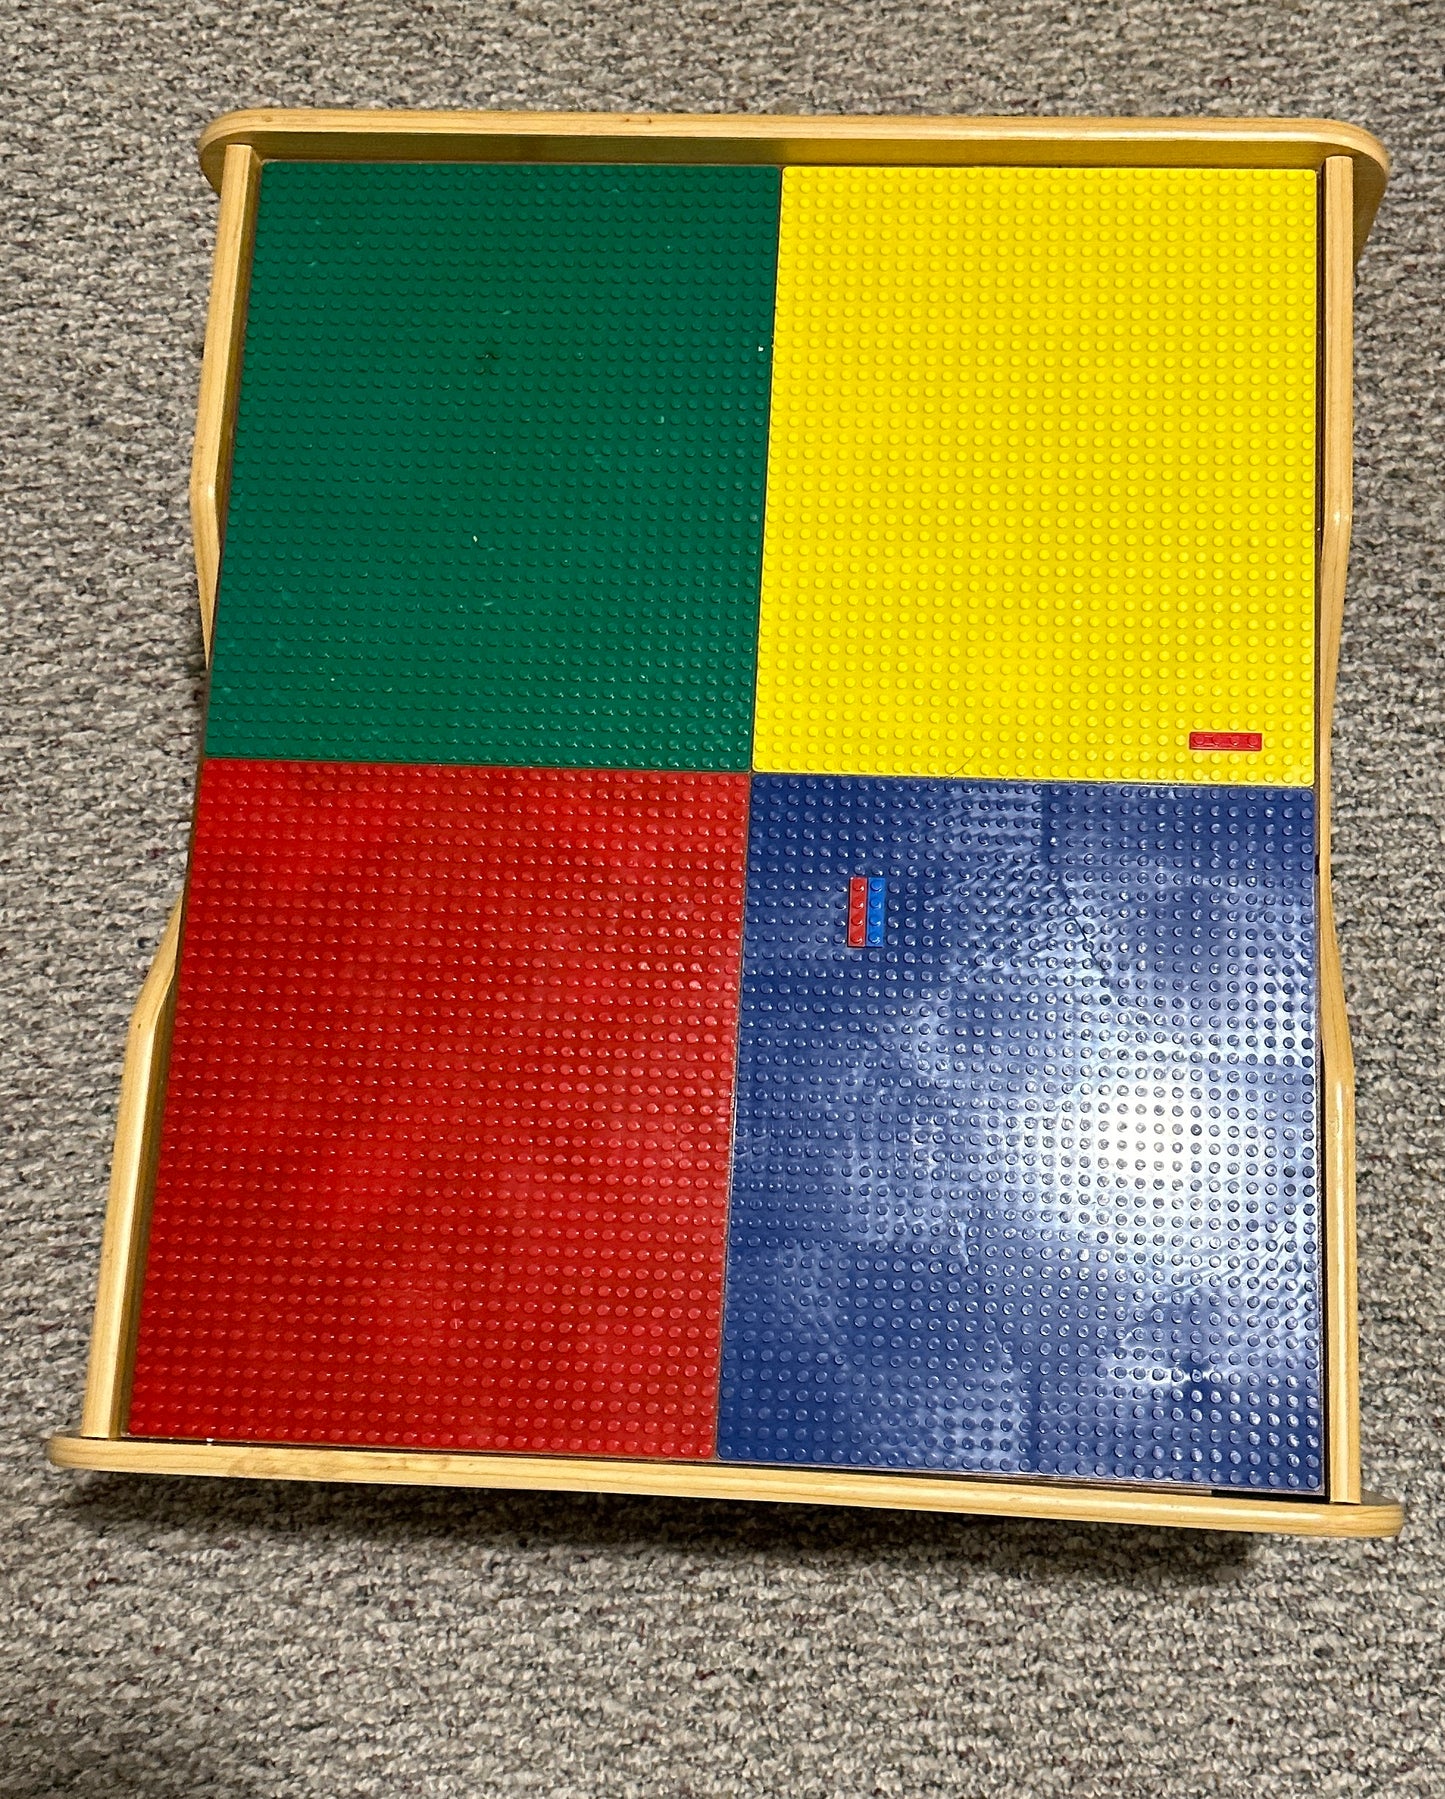 Lego/train table